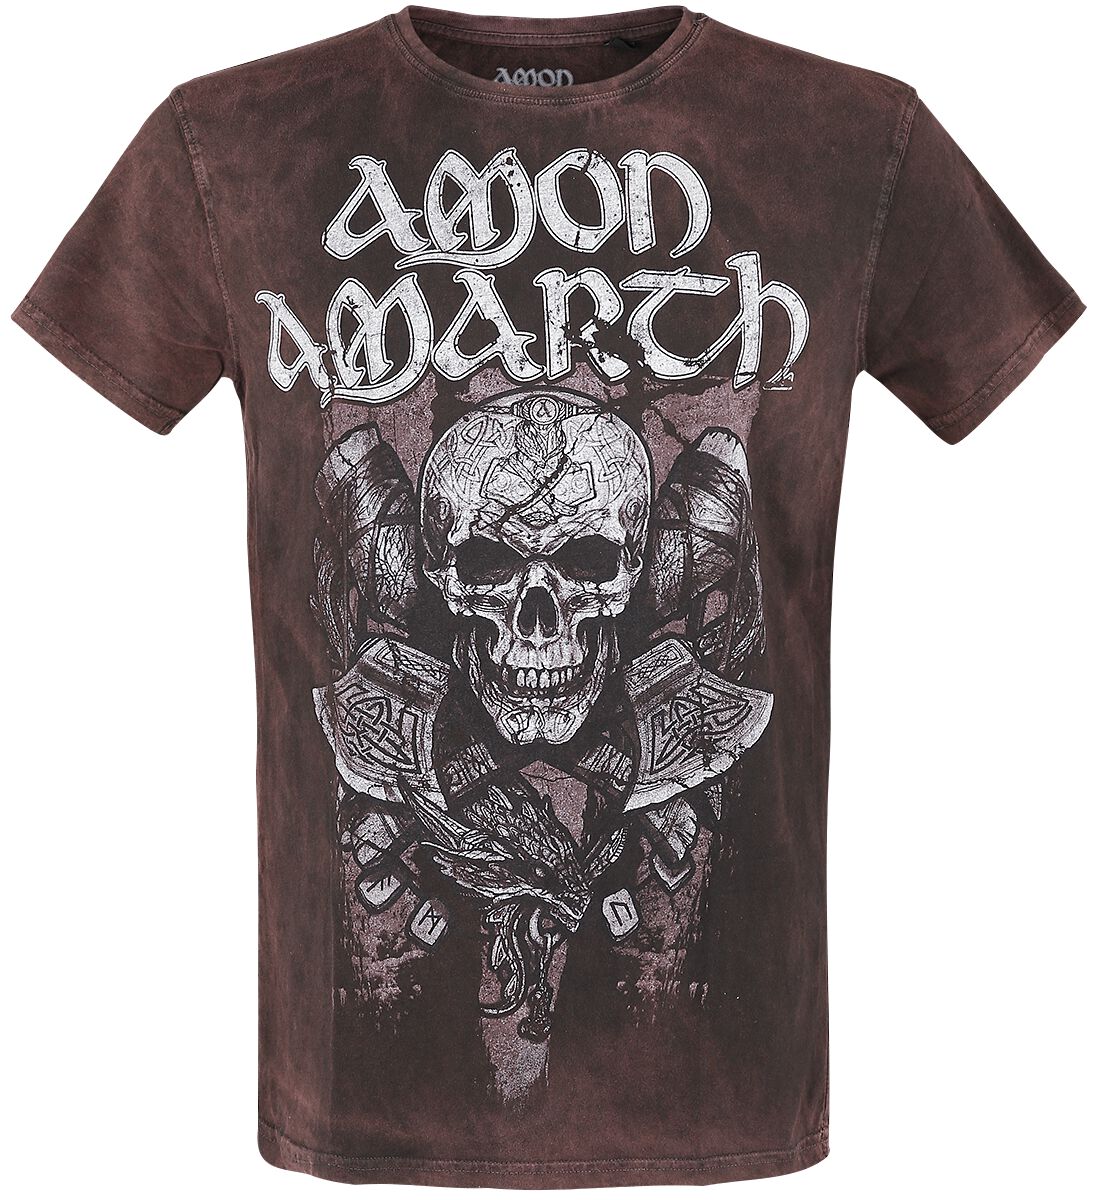 Amon Amarth T-Shirt - Carved Skull - S bis L - für Männer - Größe L - braun  - EMP exklusives Merchandise!